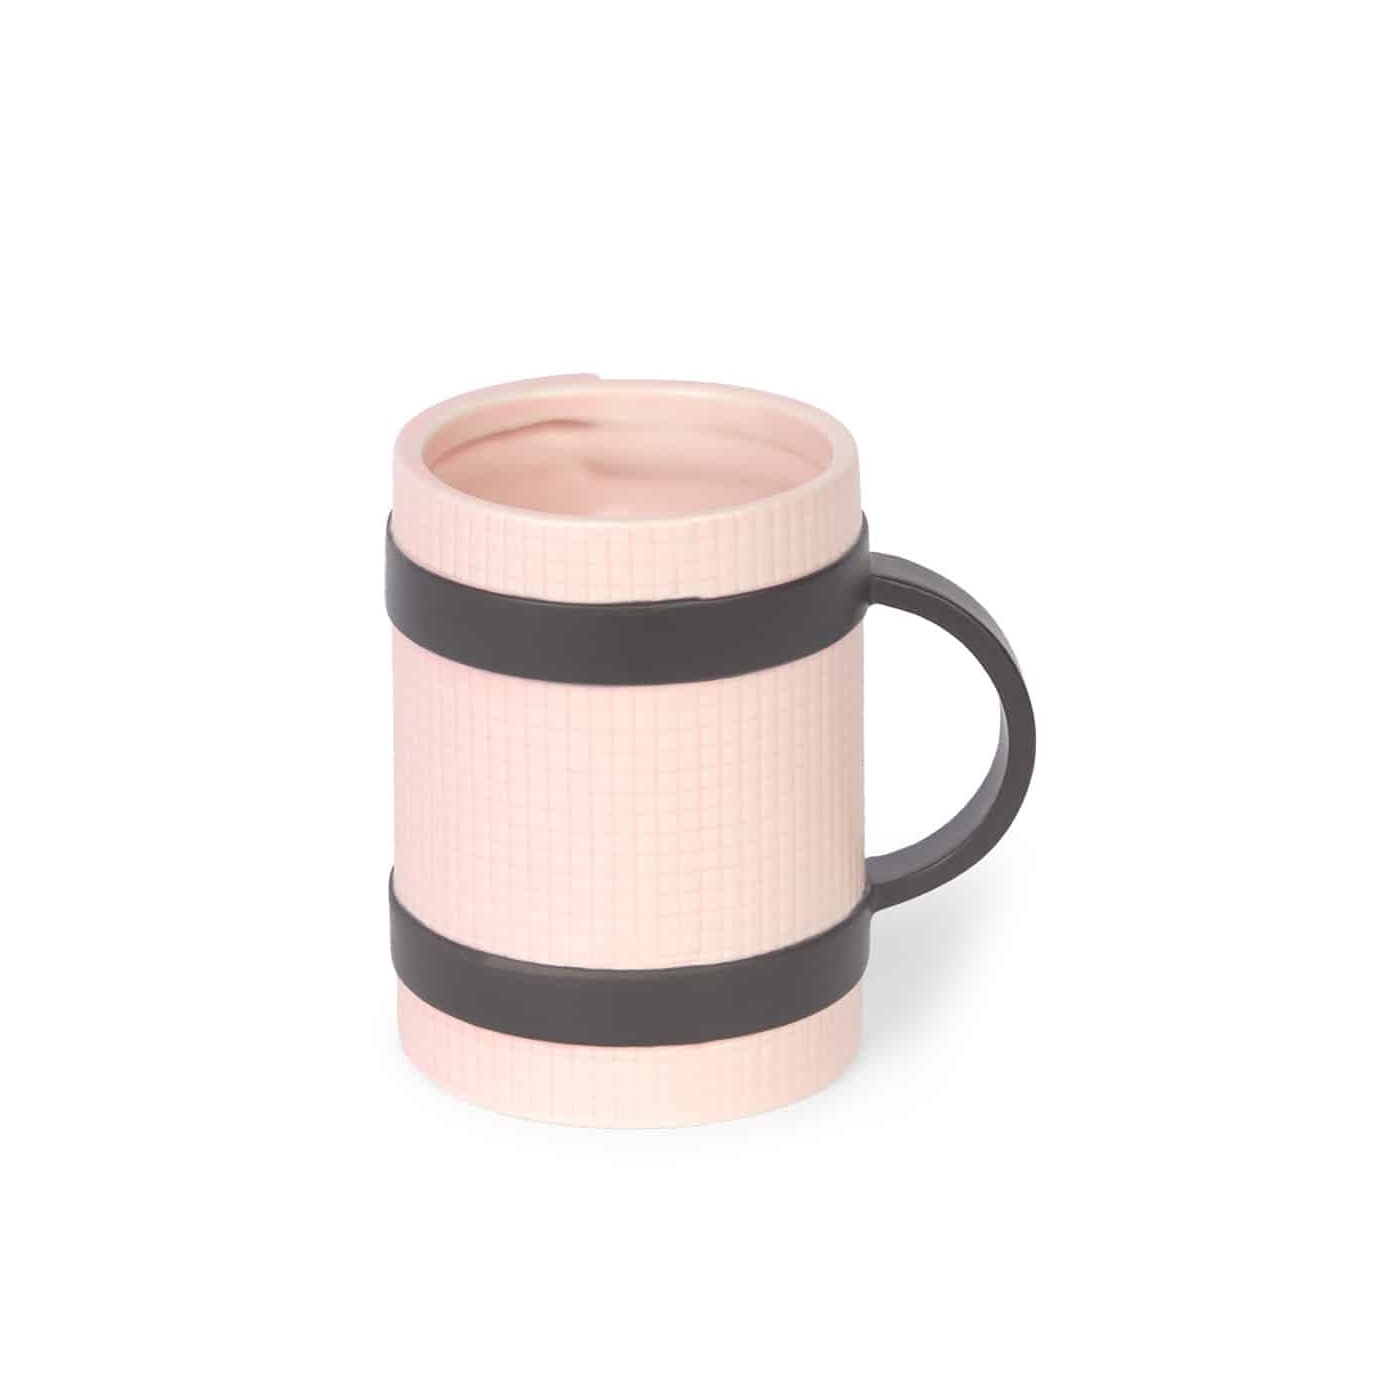 Yoga mug pink